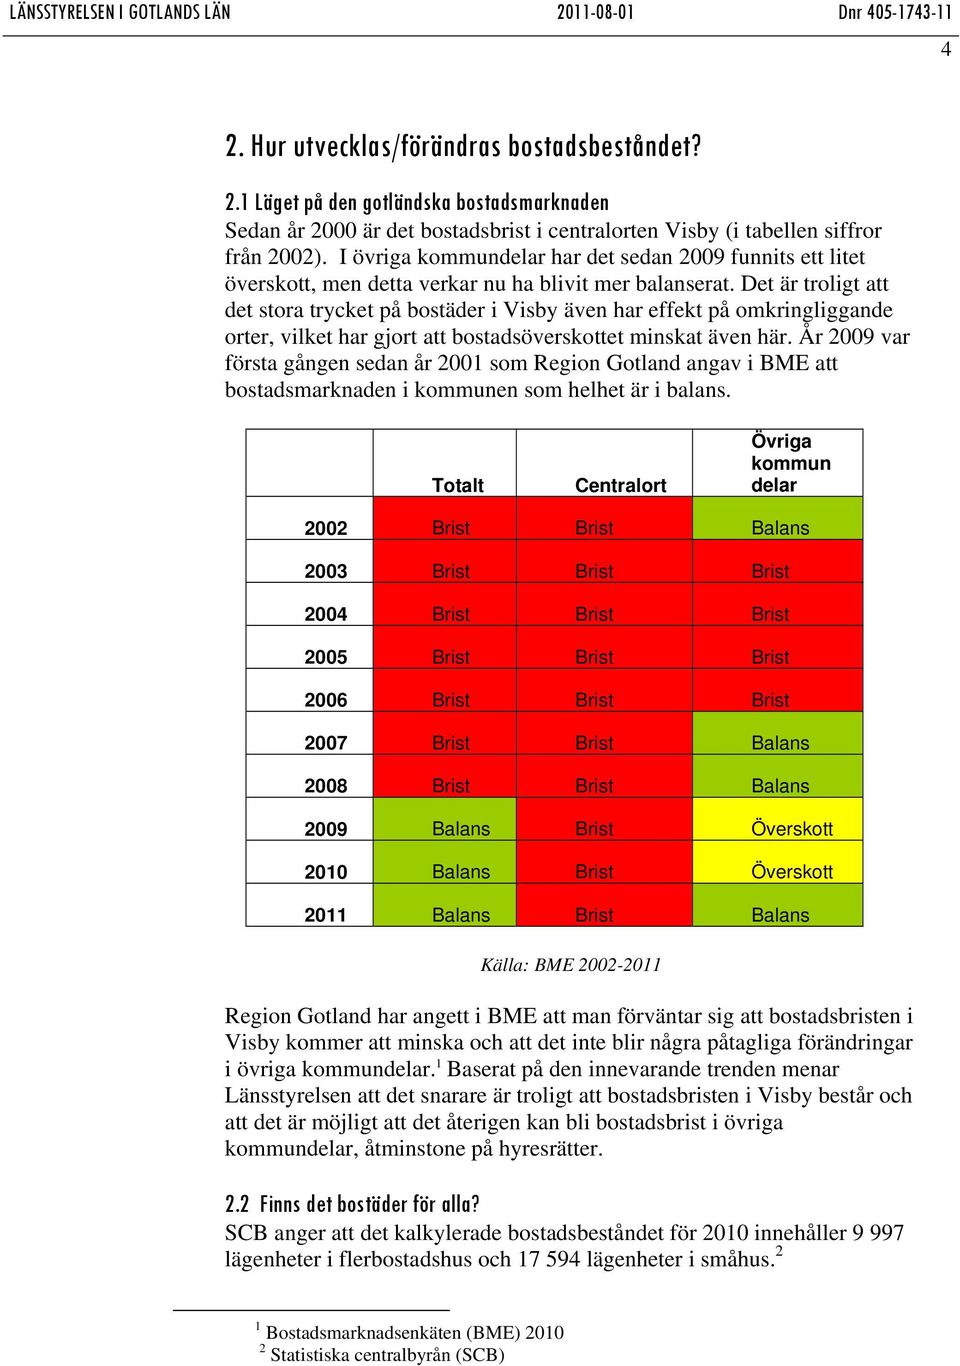 Det är troligt att det stora trycket på bostäder i Visby även har effekt på omkringliggande orter, vilket har gjort att bostadsöverskottet minskat även här.